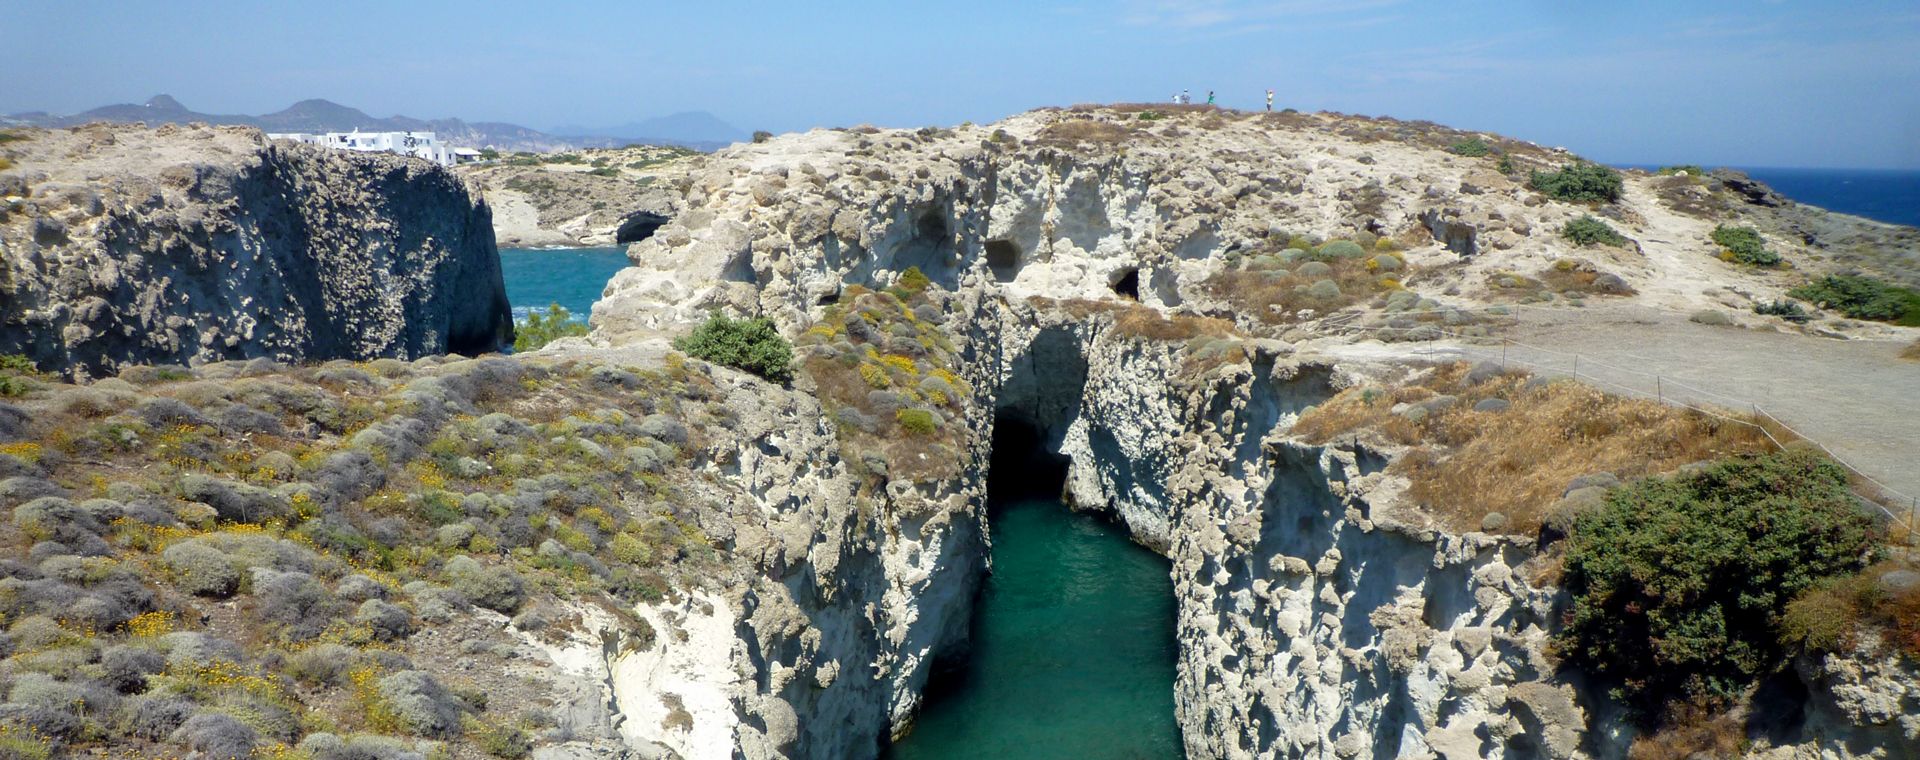 La crique de Papafragas, île de Milos, Cyclades